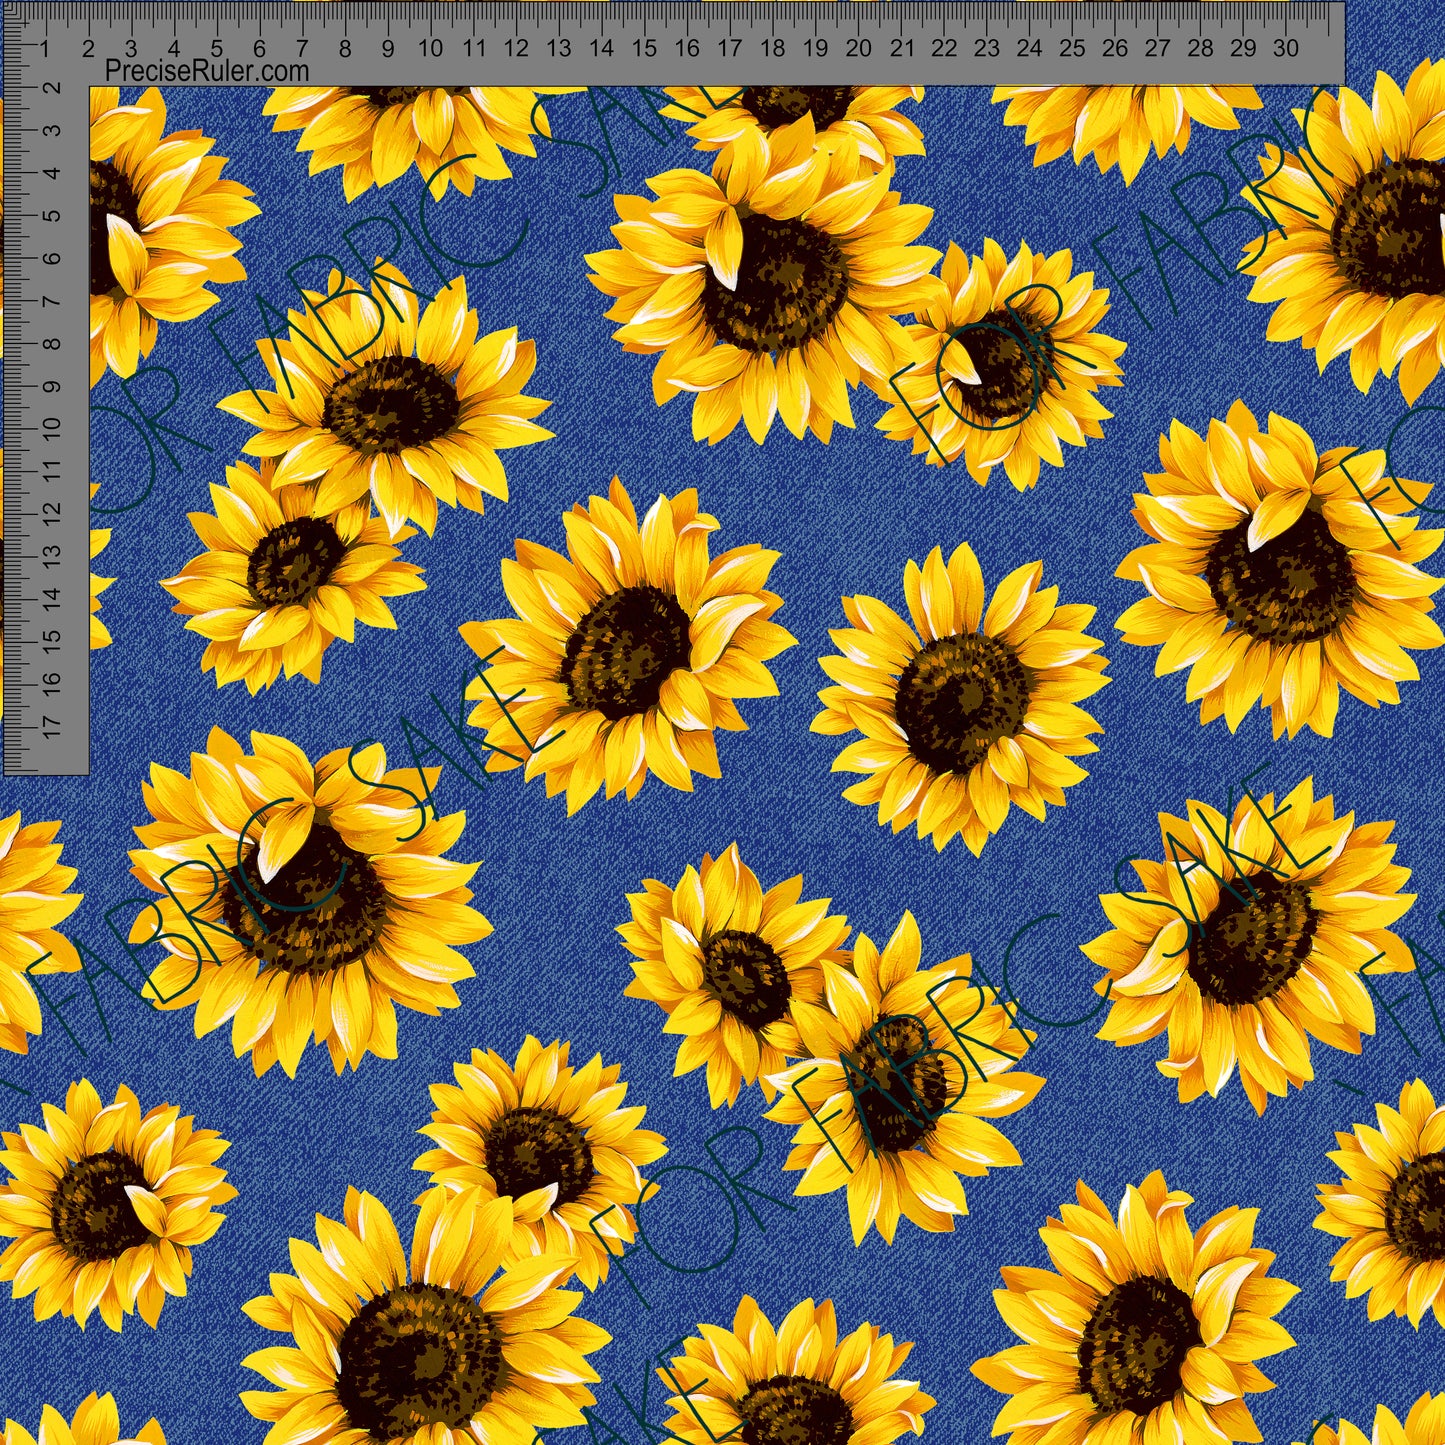 Sunflowers on denim- Custom Pre-order